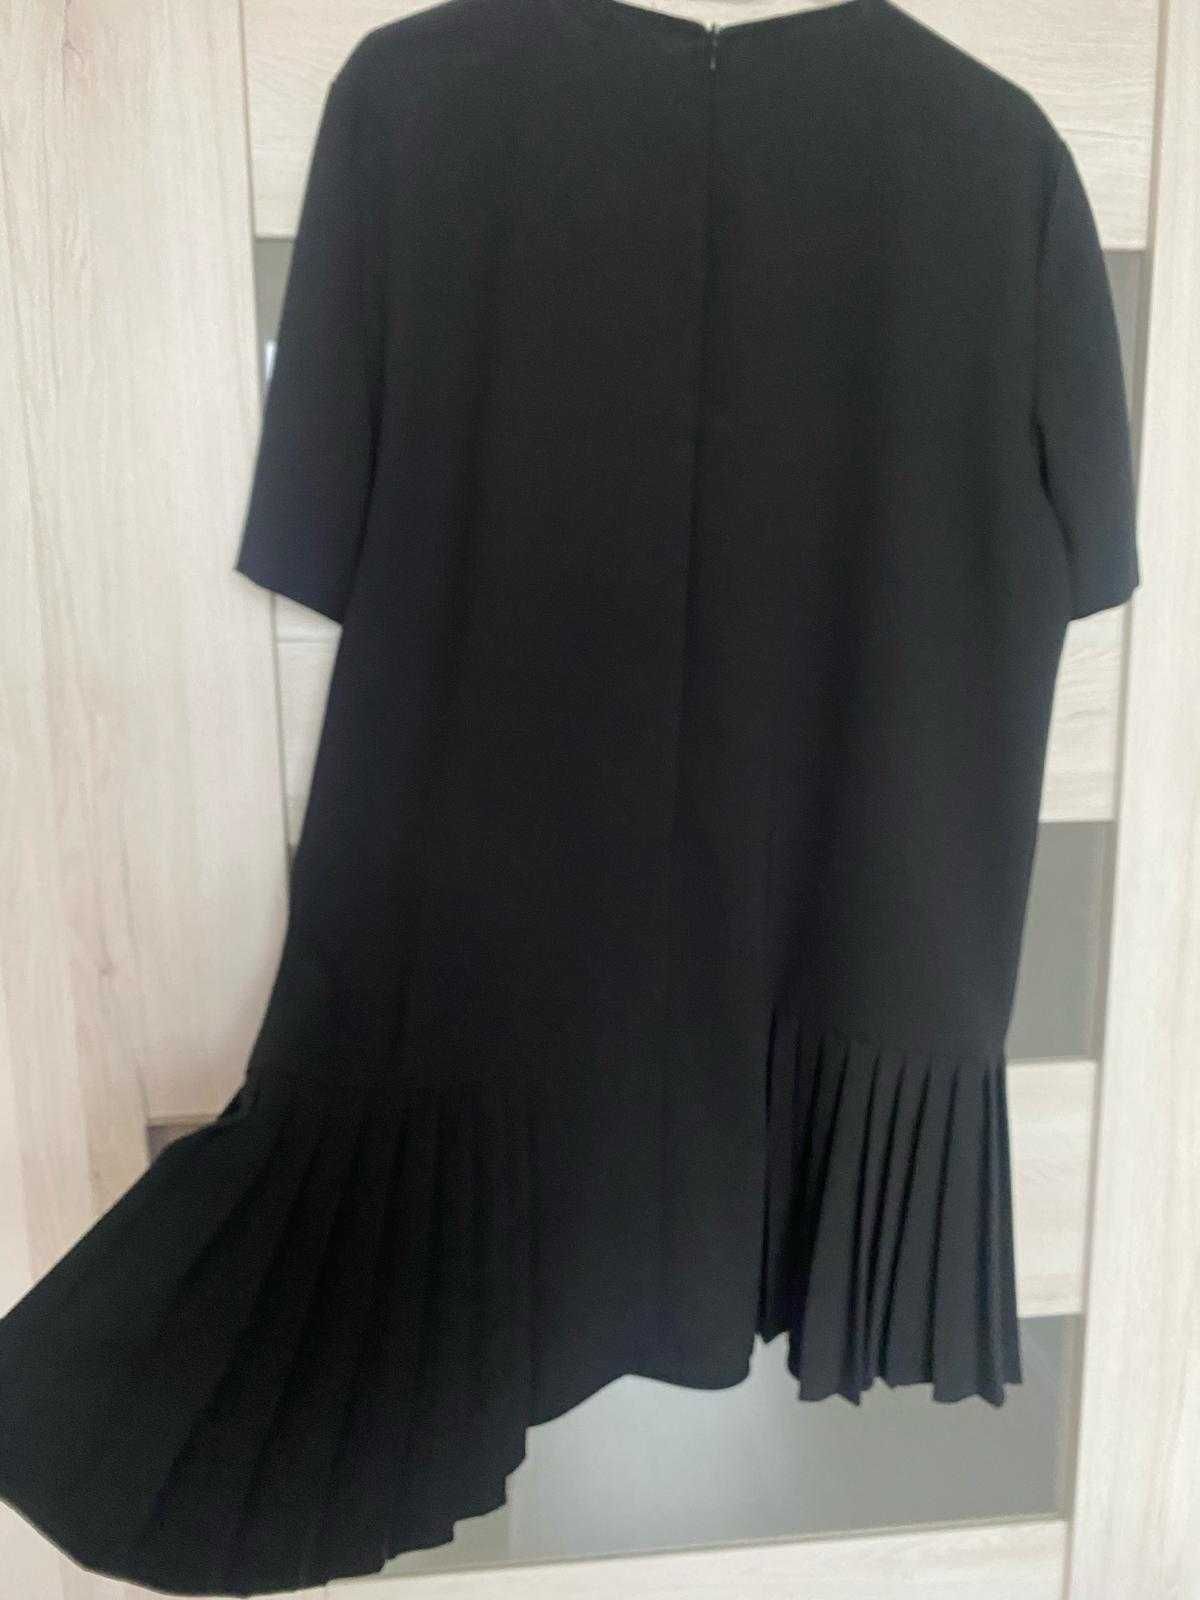 Sukienka ZARA r. XL / jak nowa / czarna, prosta z plisami po boku